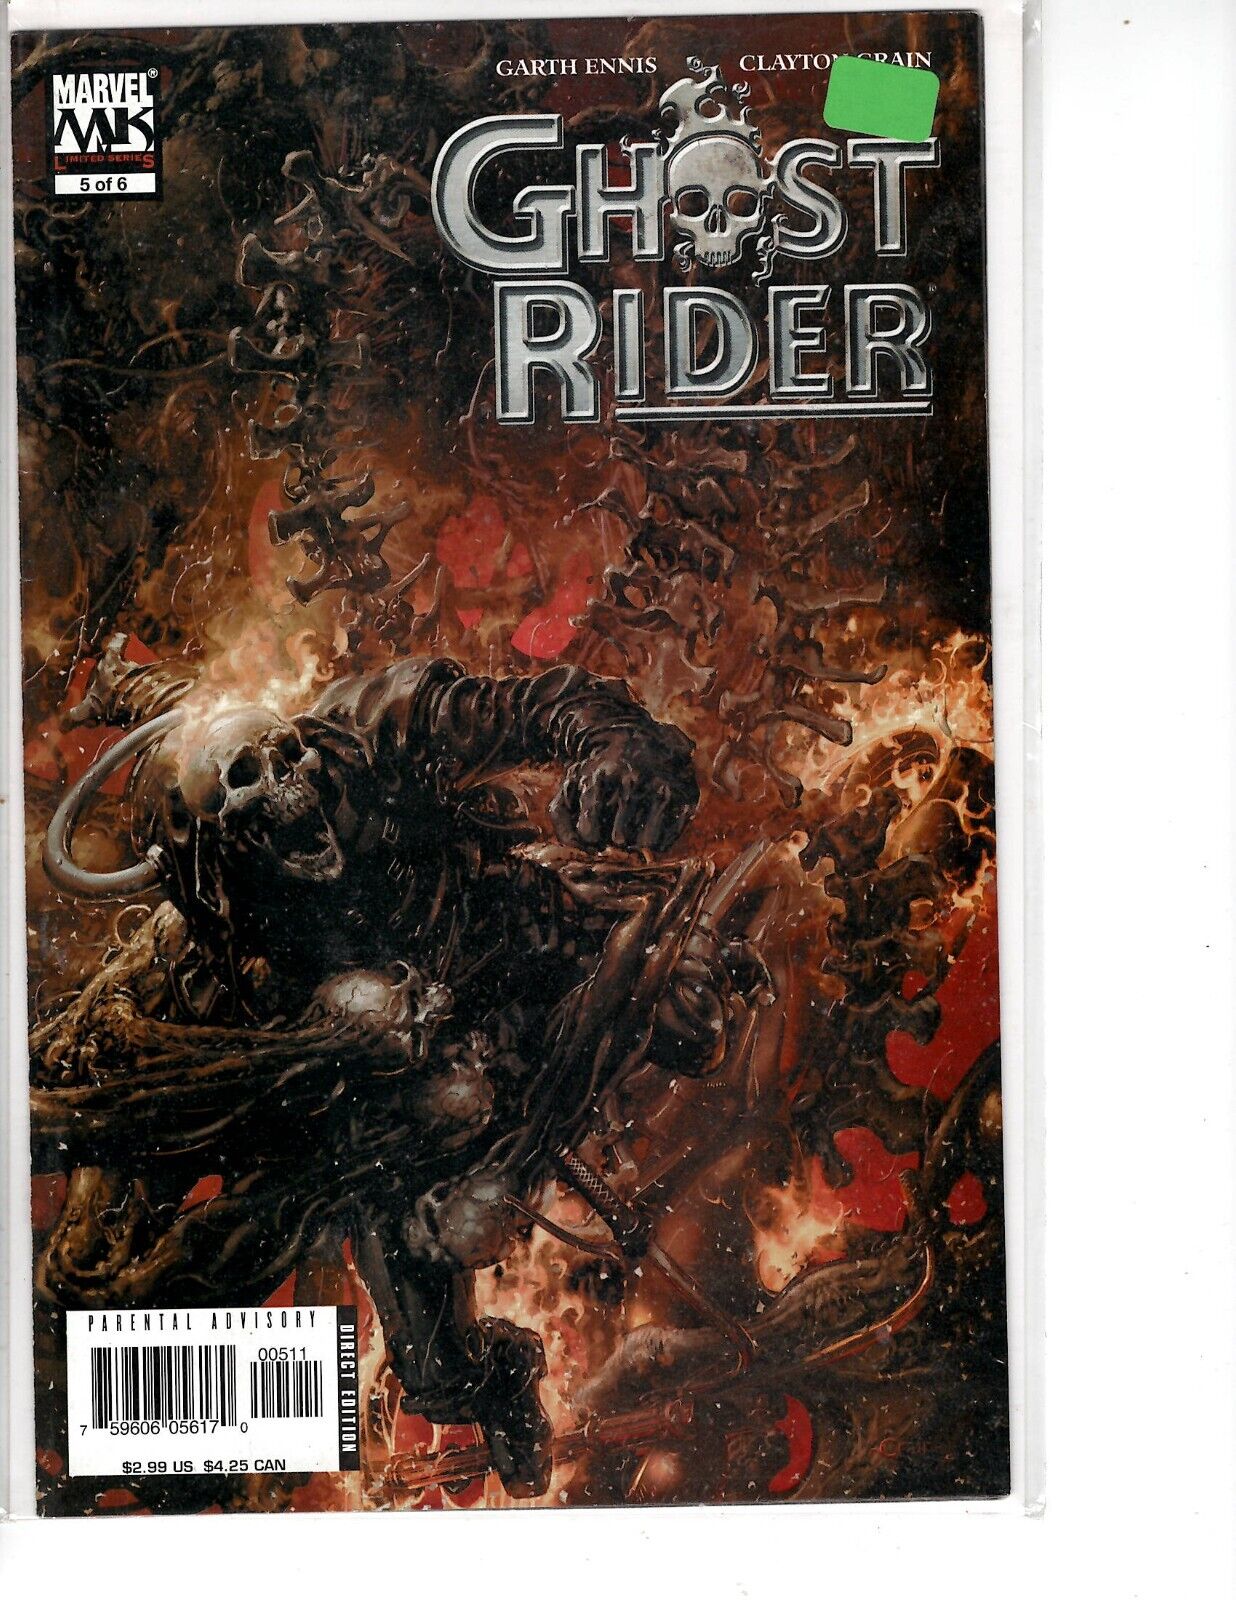 Ghost Rider Vol. 5 Issue #5 - Garth Ennis